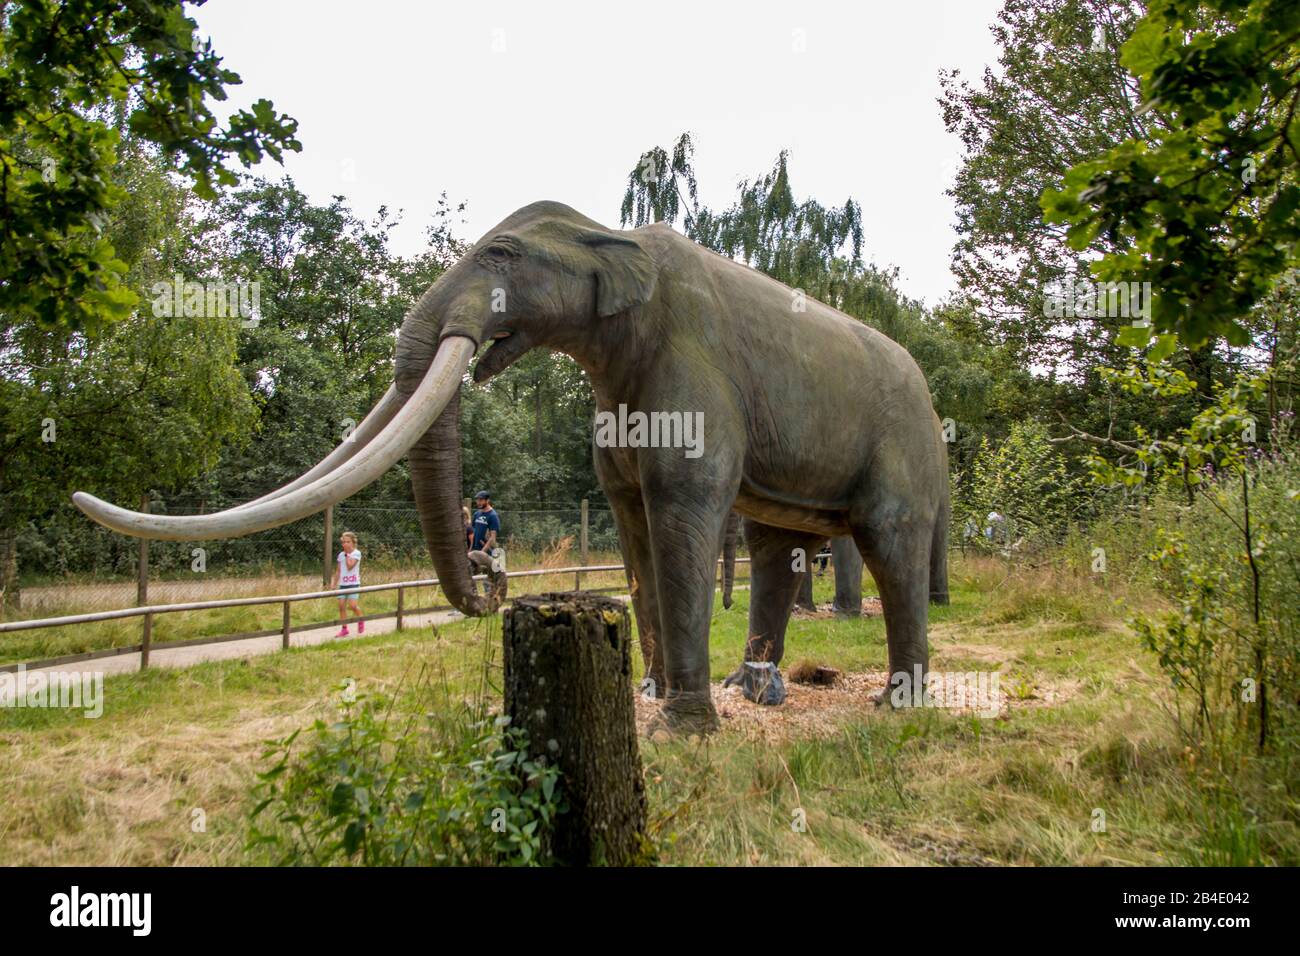 Giveskud, Dänemark - 16. juli 2020: Steinzeitliche Tiere in der Natur glauben Größen, wie sie waren, als sie am Leben waren Stockfoto